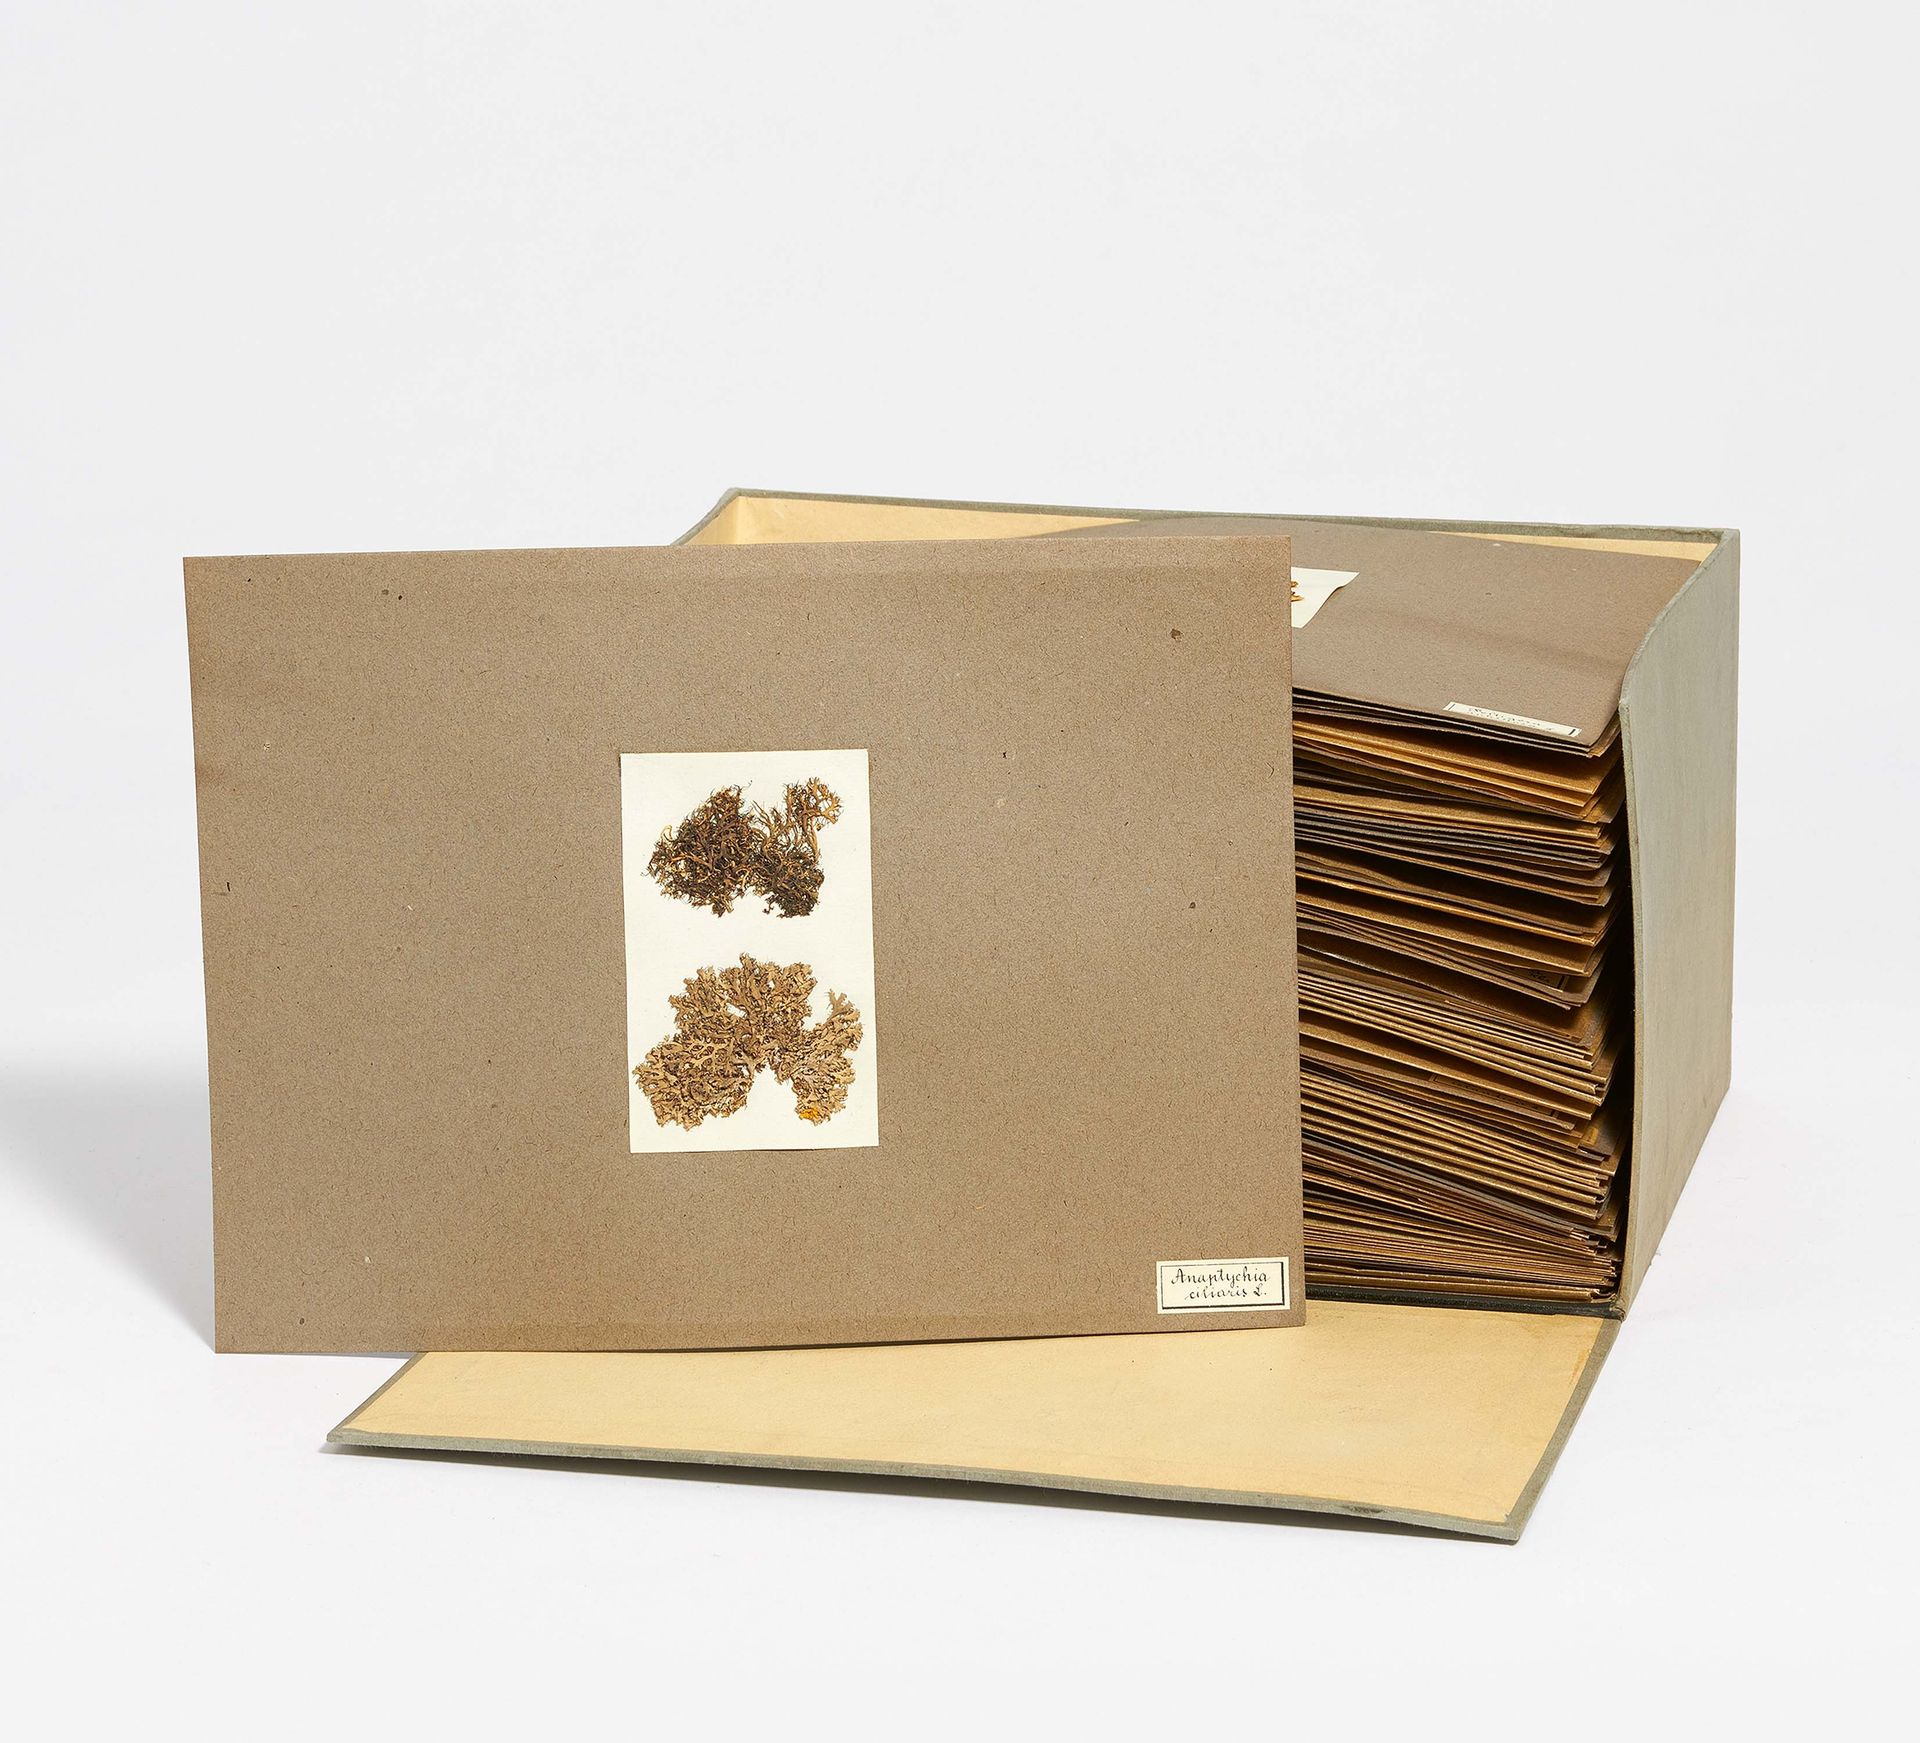 Null 收藏在档案盒中的地衣。 

日期。 约1900年。1900年。
技术。 卡片，羊皮纸，地衣样品。
描述。 档案盒里有大约50张灰色卡片，用羊皮纸覆盖。&hellip;